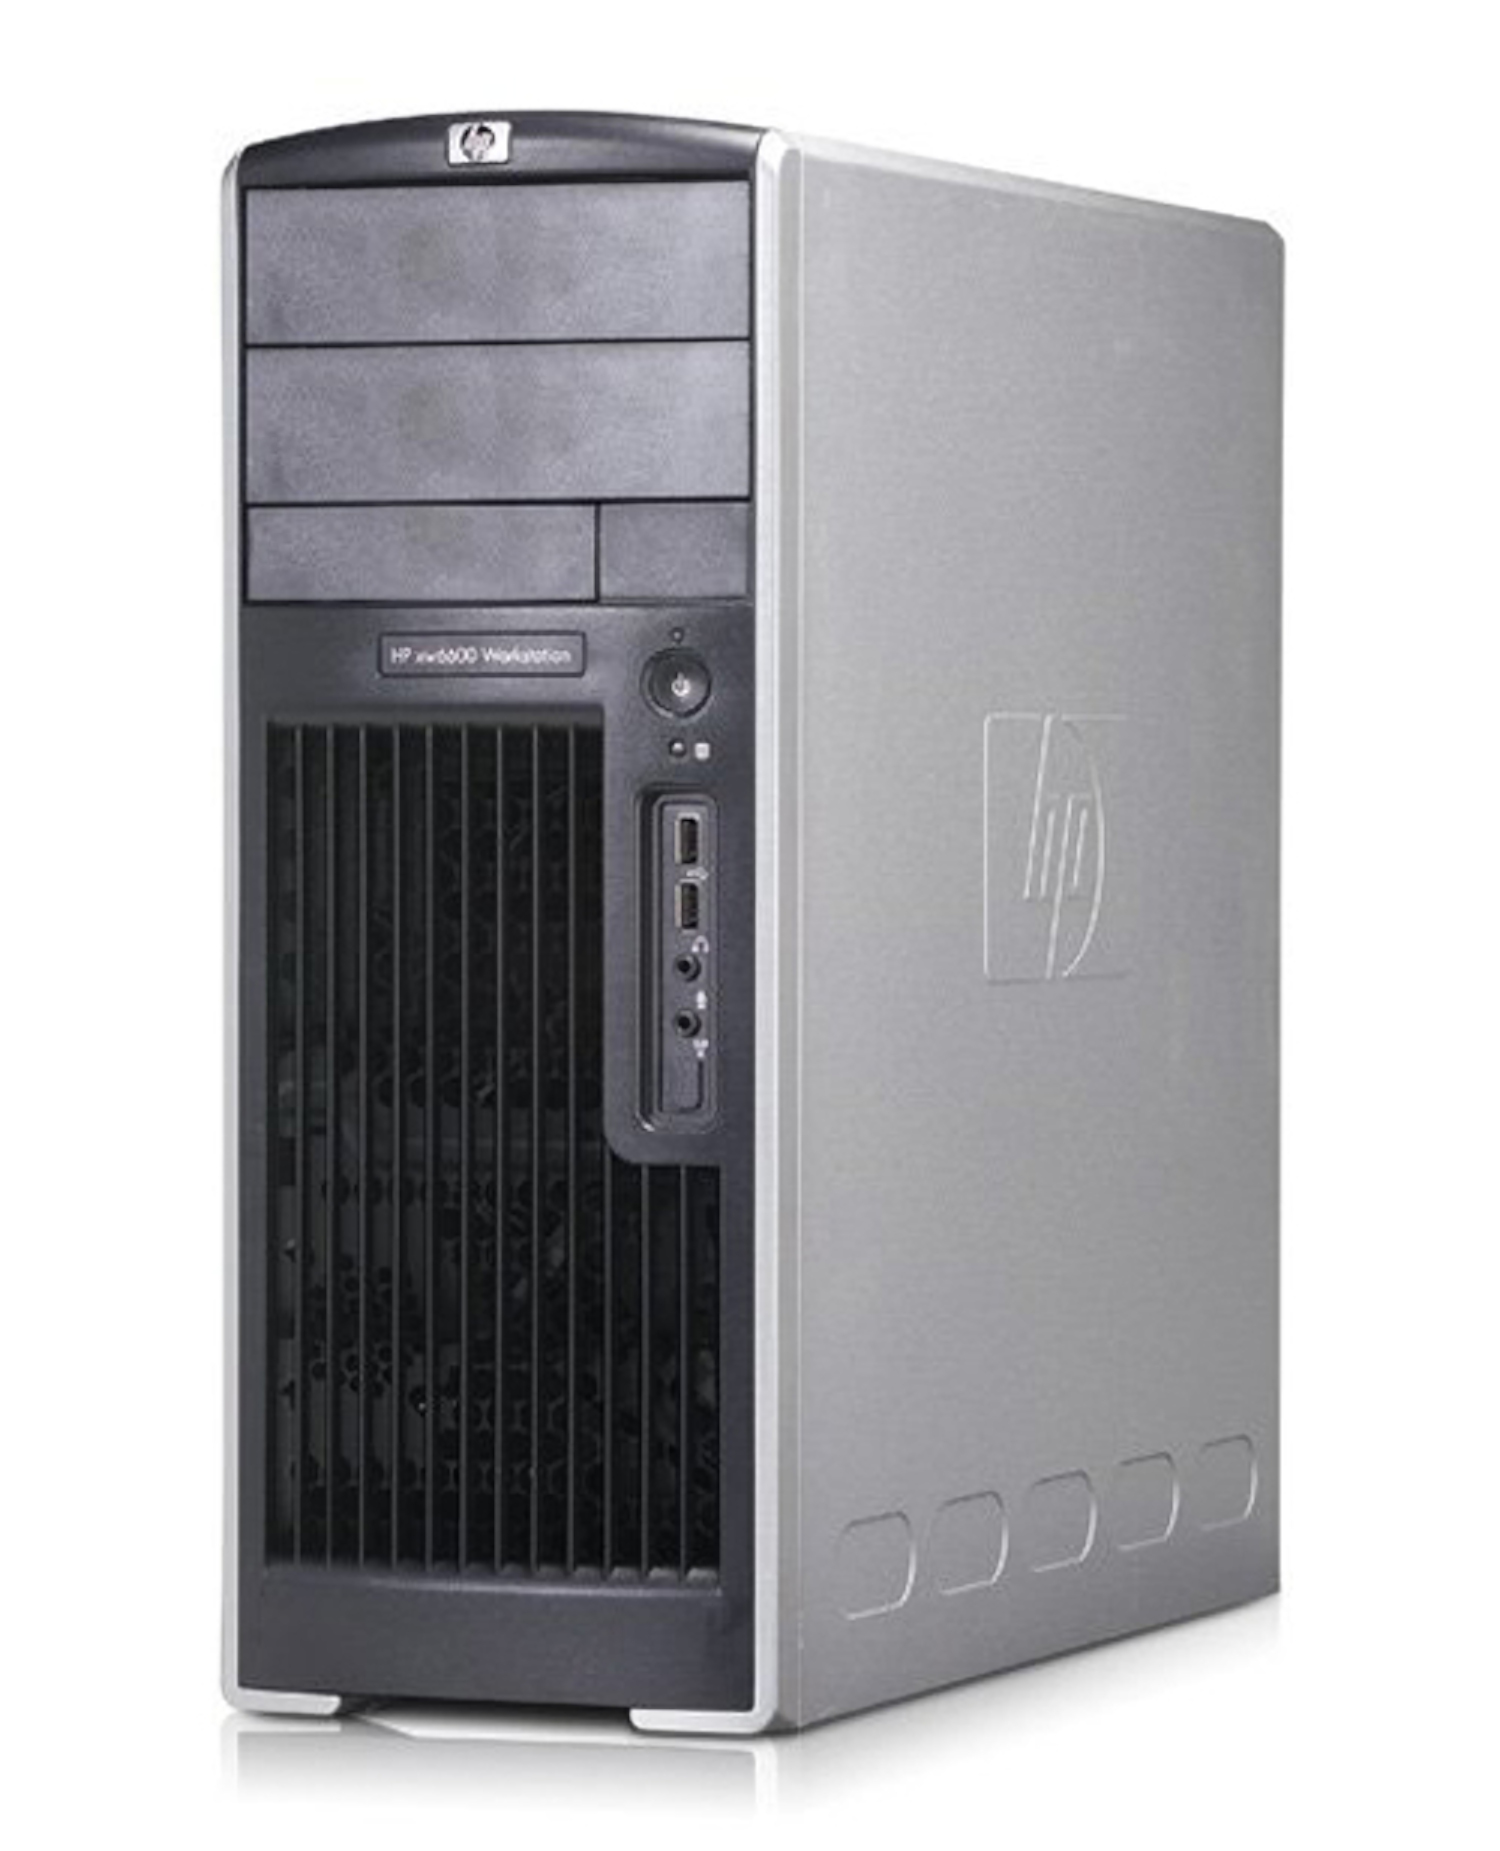 HP XW6600 Workstation Barebone Chassis Case PSU 650W 446337-002